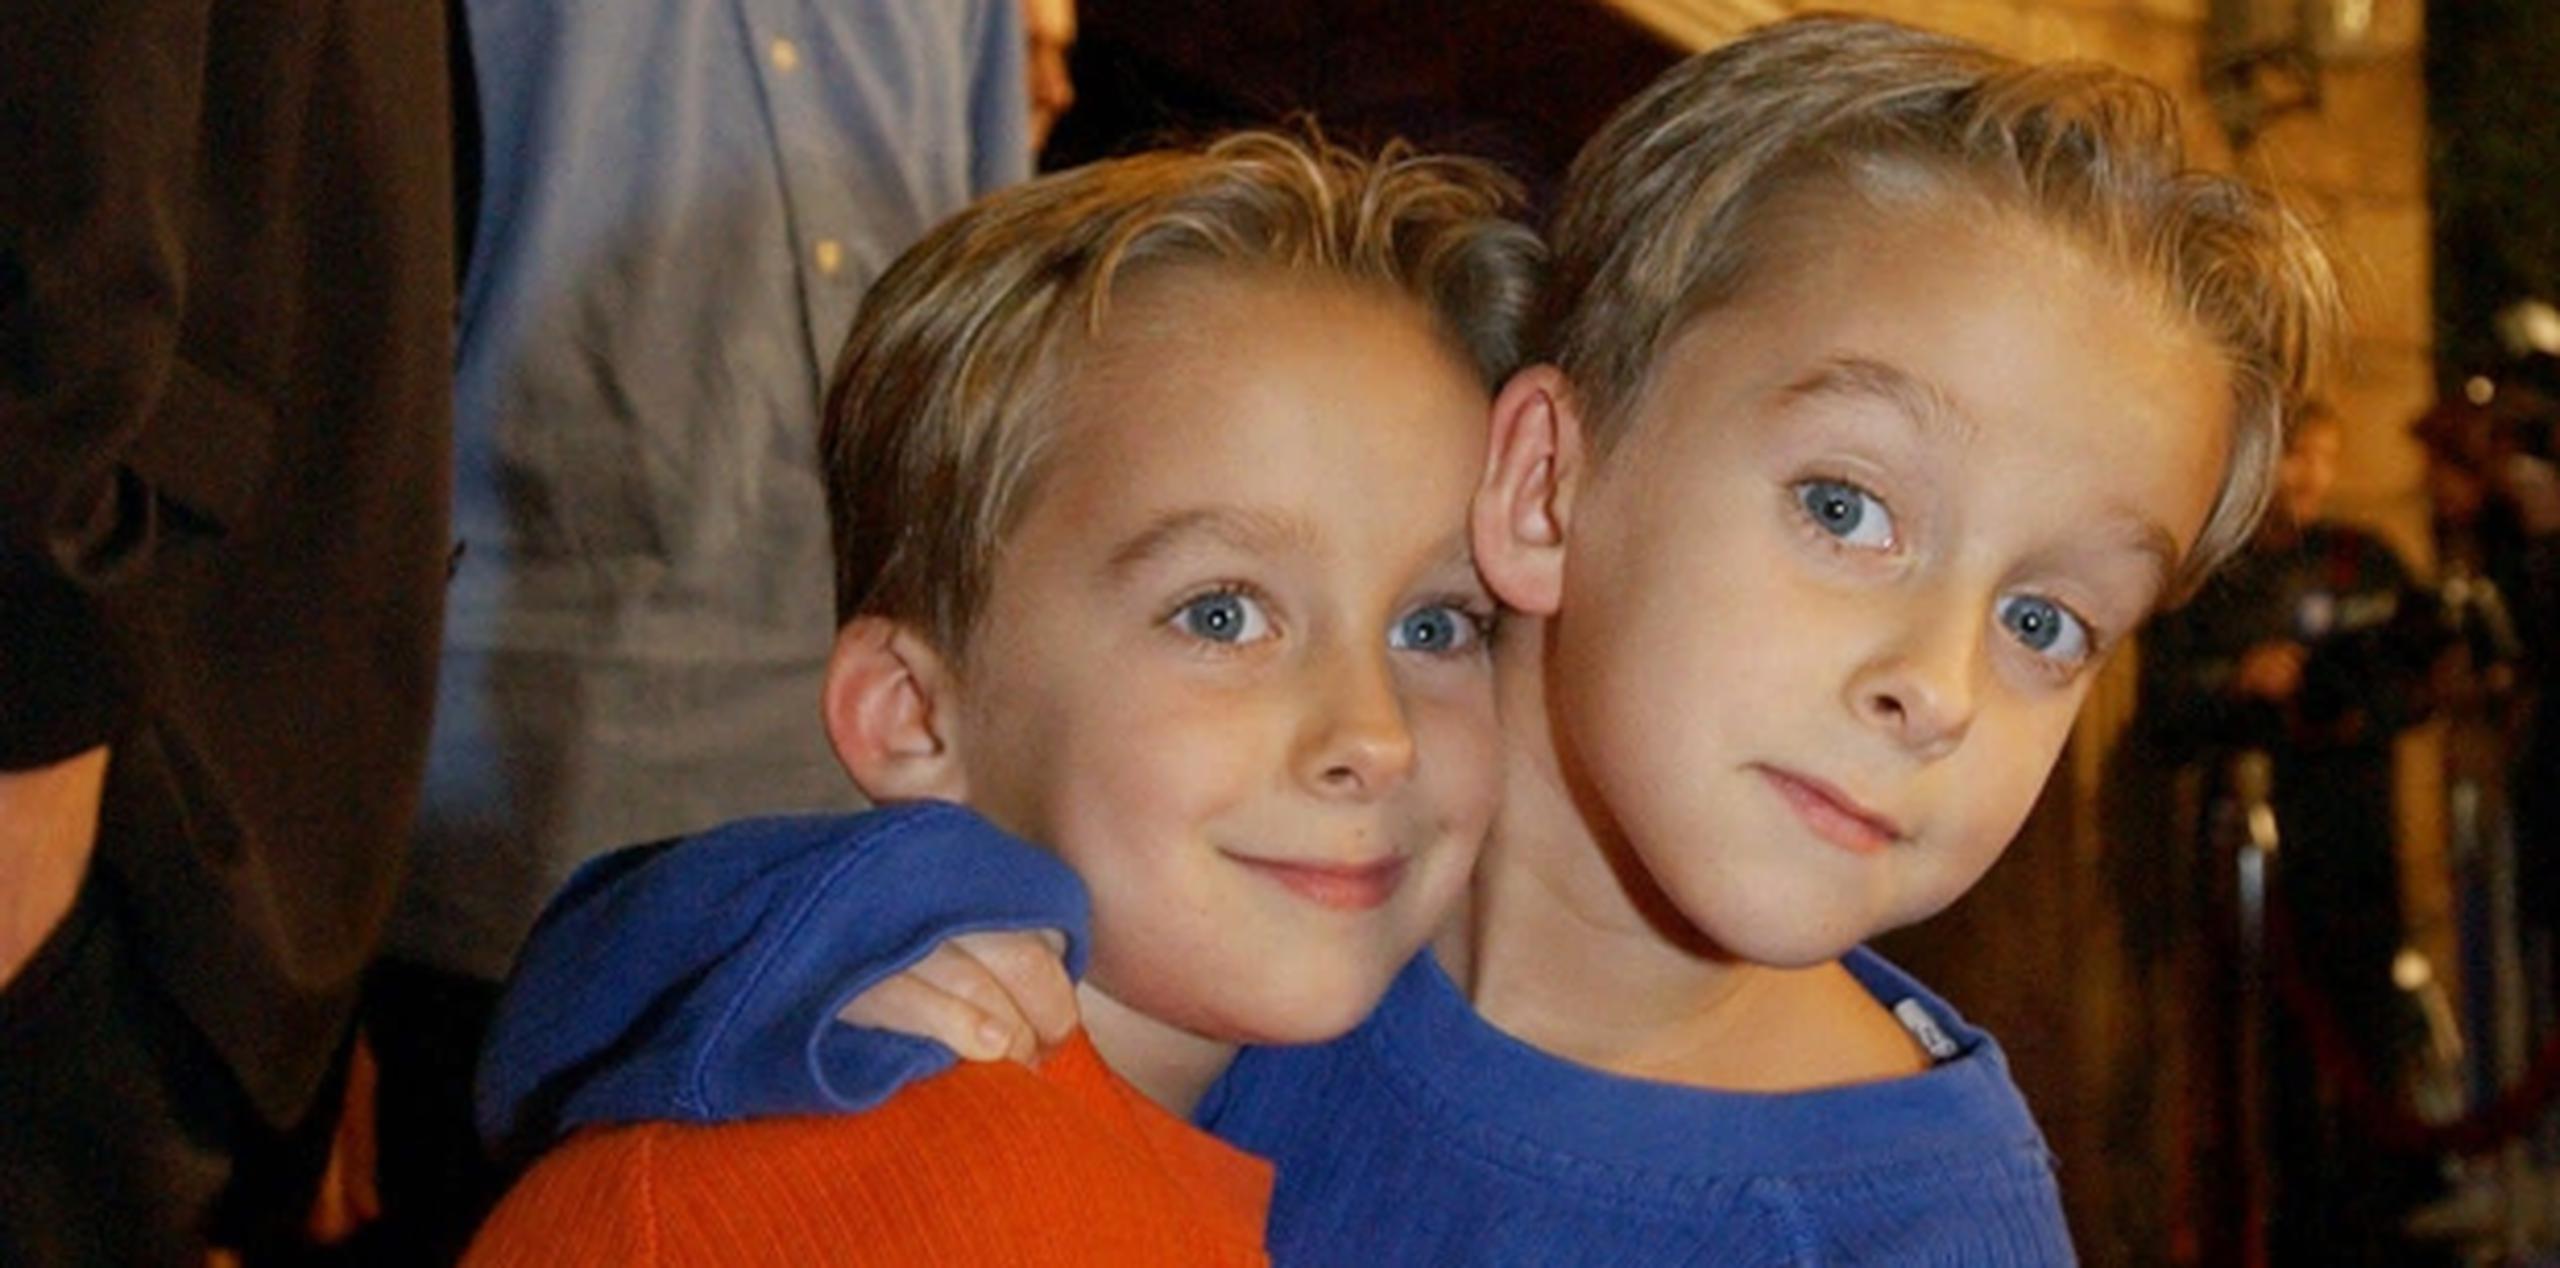 Sawyer (a la derecha) y su hermano gemelo Sullivan eran estrellas de la serie "Everybody Loves Raymond".